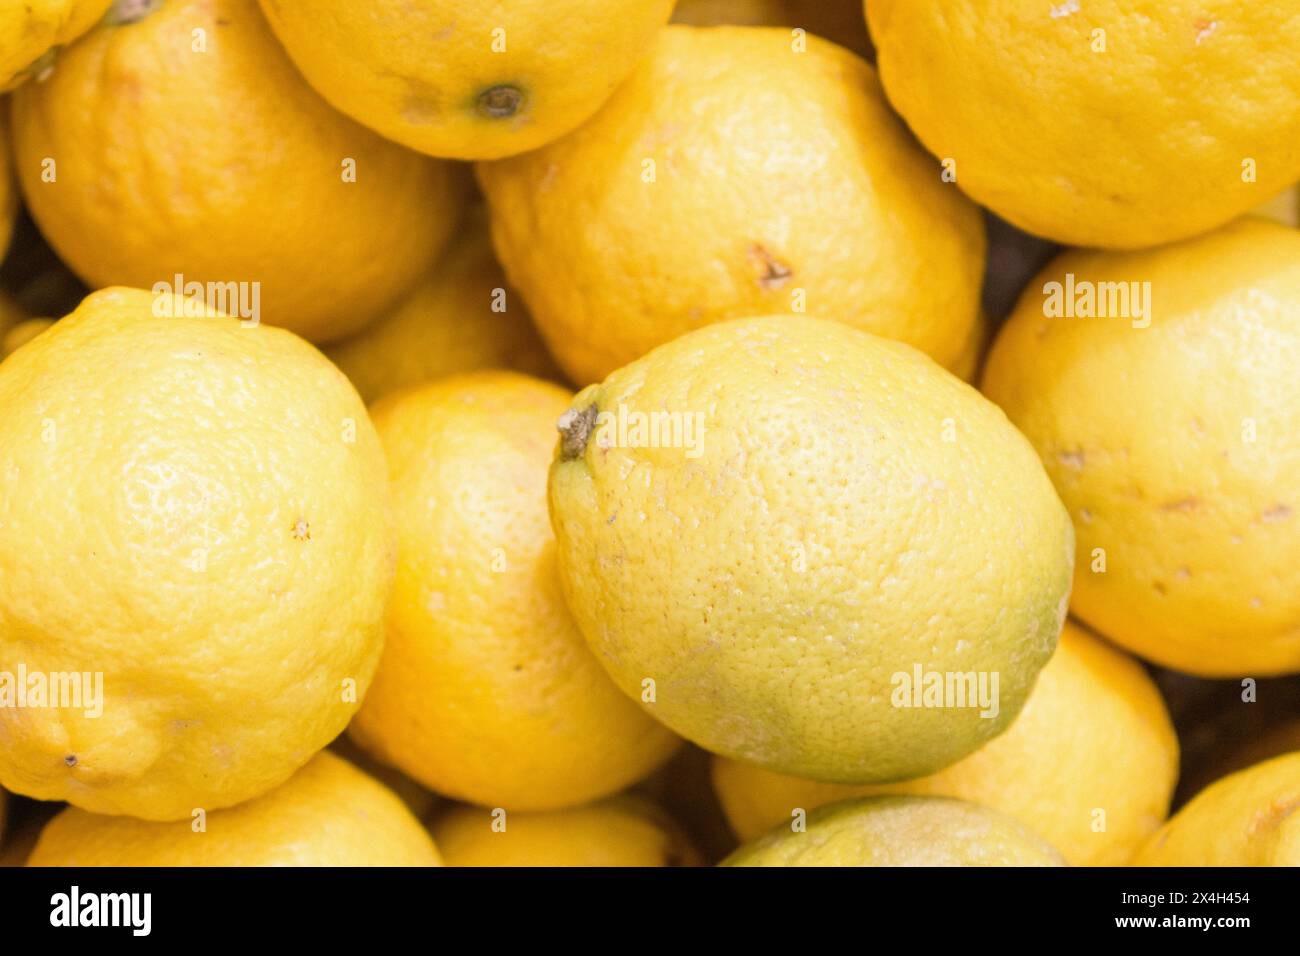 Zitronen auf dem Markt. Saftige Zitronen im Hintergrund. Gelbe Früchte. Haufen reifer Zitronen. Gelber Hintergrund. Zitrusernte. Gesunde Ernährung. Stockfoto